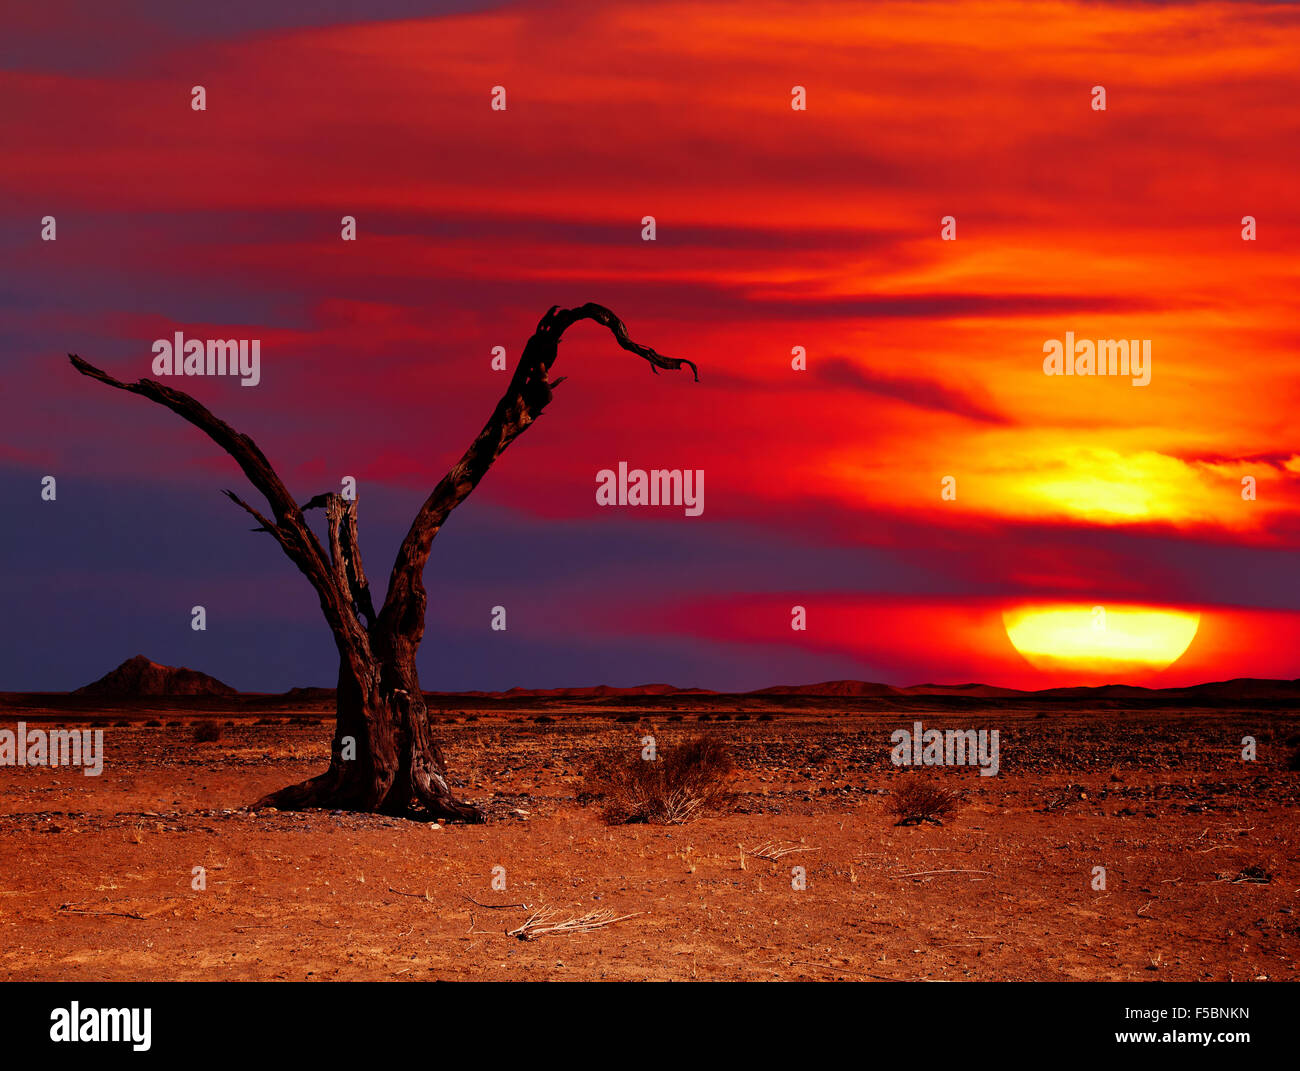 Paysage désertique avec arbre mort au coucher du soleil Banque D'Images